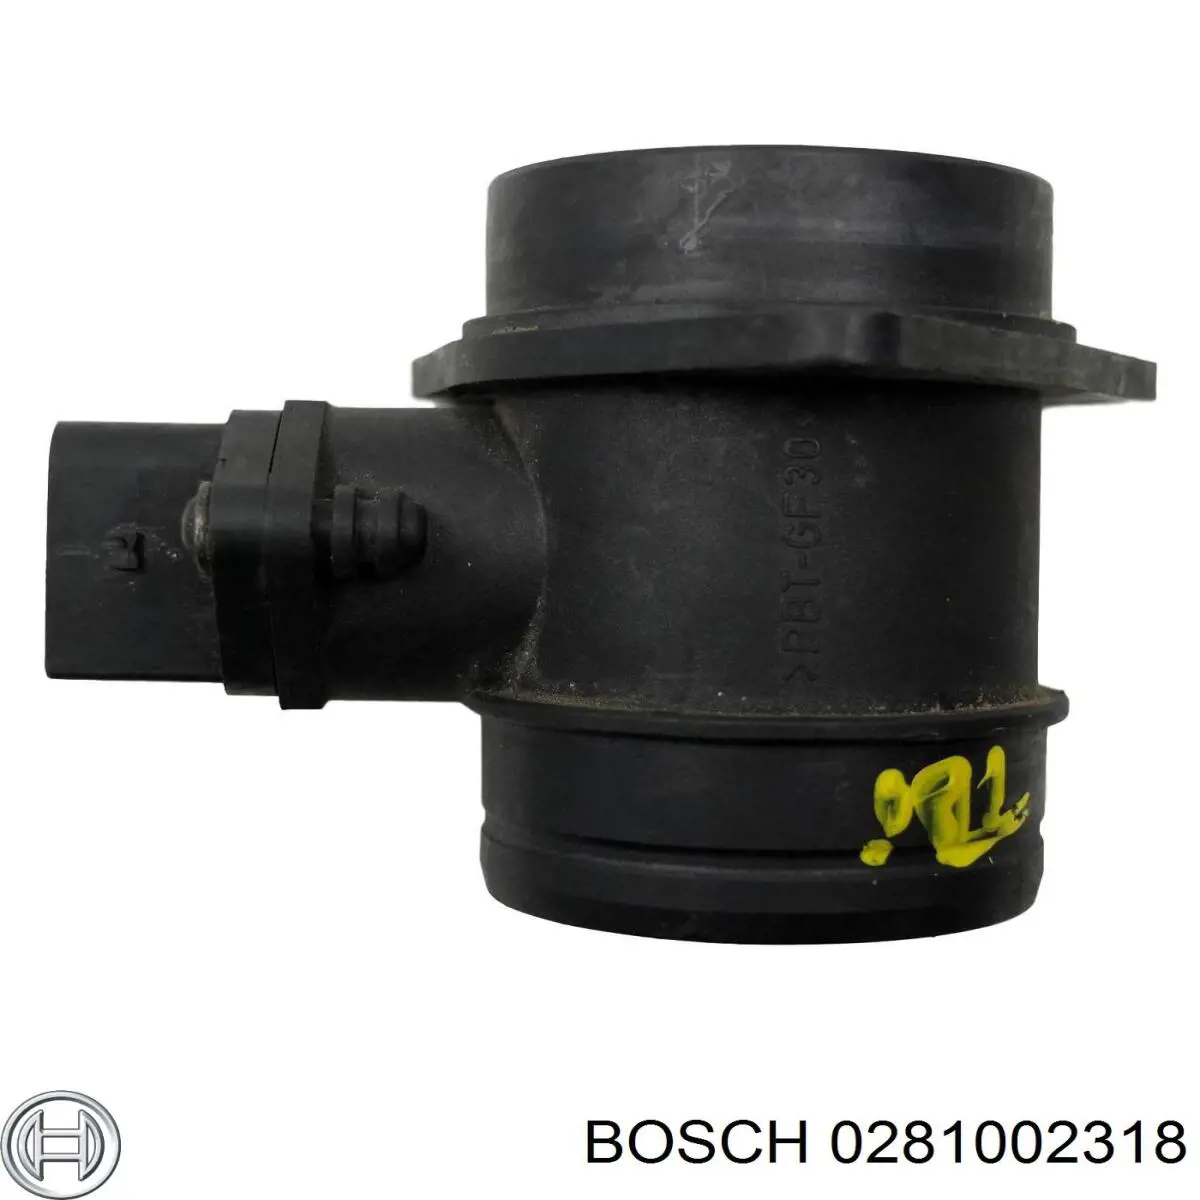 Sensor De Flujo De Aire/Medidor De Flujo (Flujo de Aire Masibo) 0281002318 Bosch